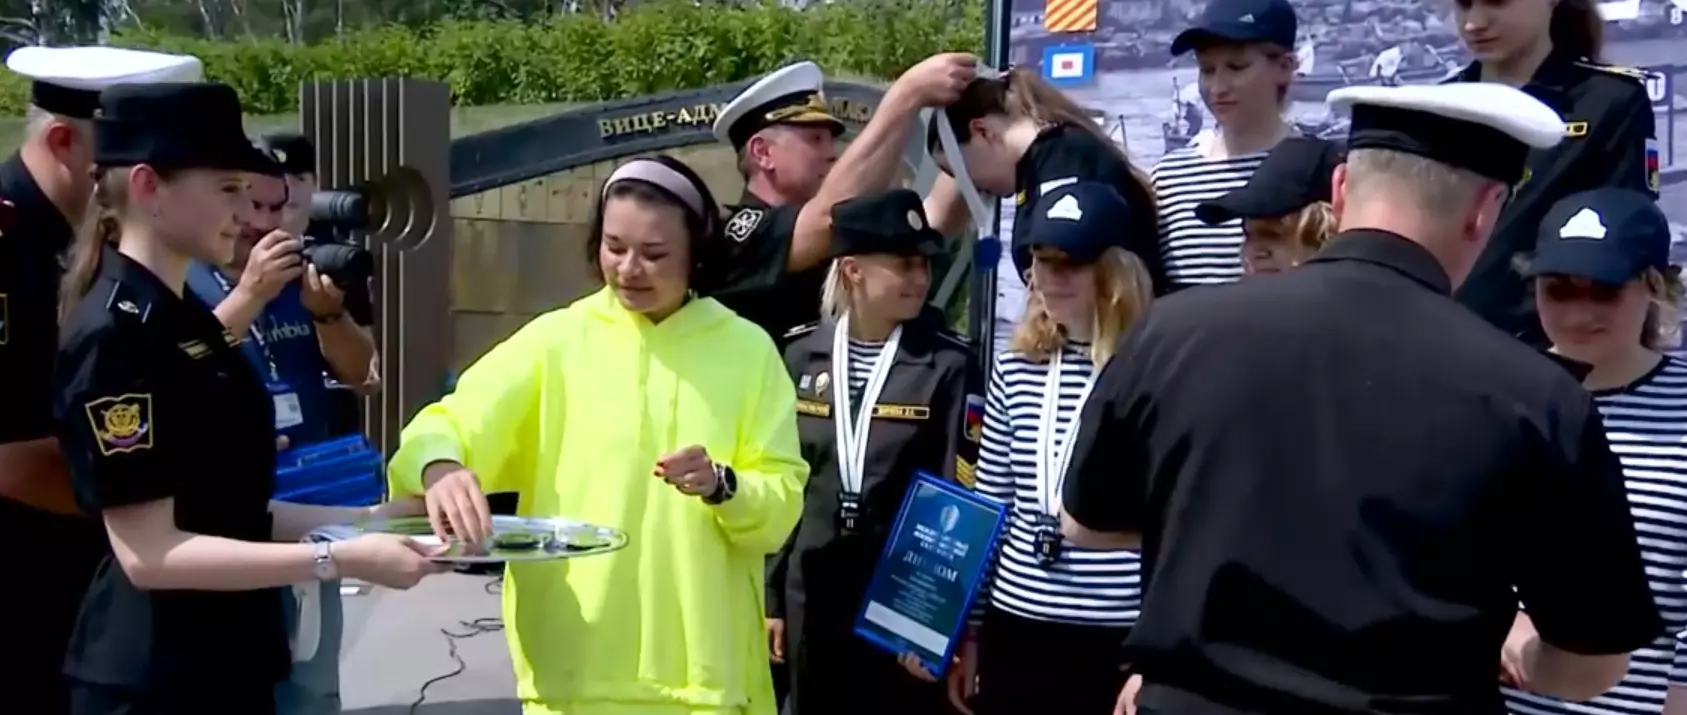 На площадке Военно-морского салона наградили победителей гребной гонки